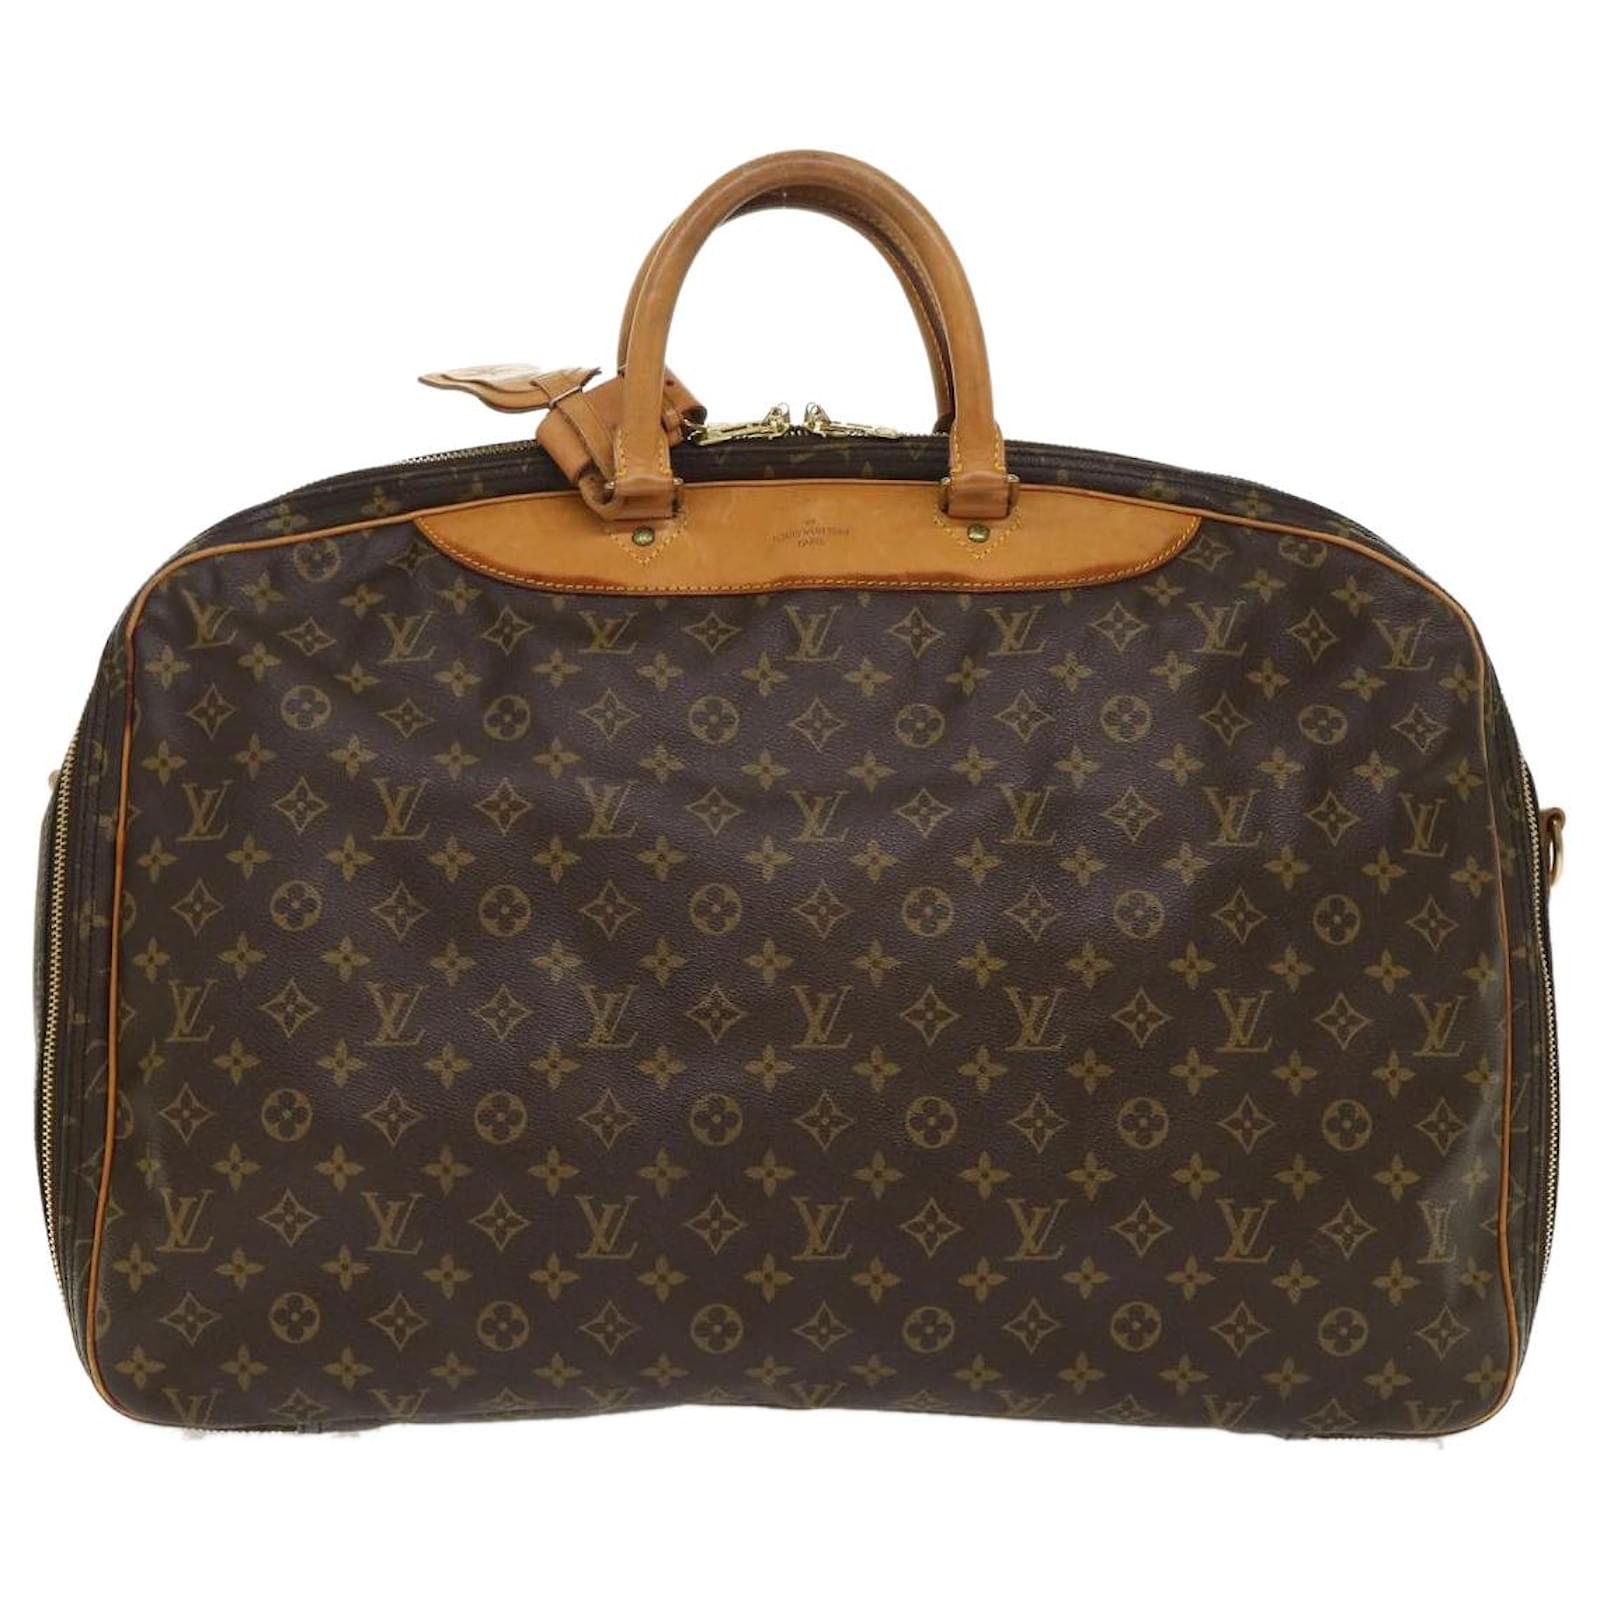 Louis Vuitton Alize1 Pouch Travel Bag Handbag Tote